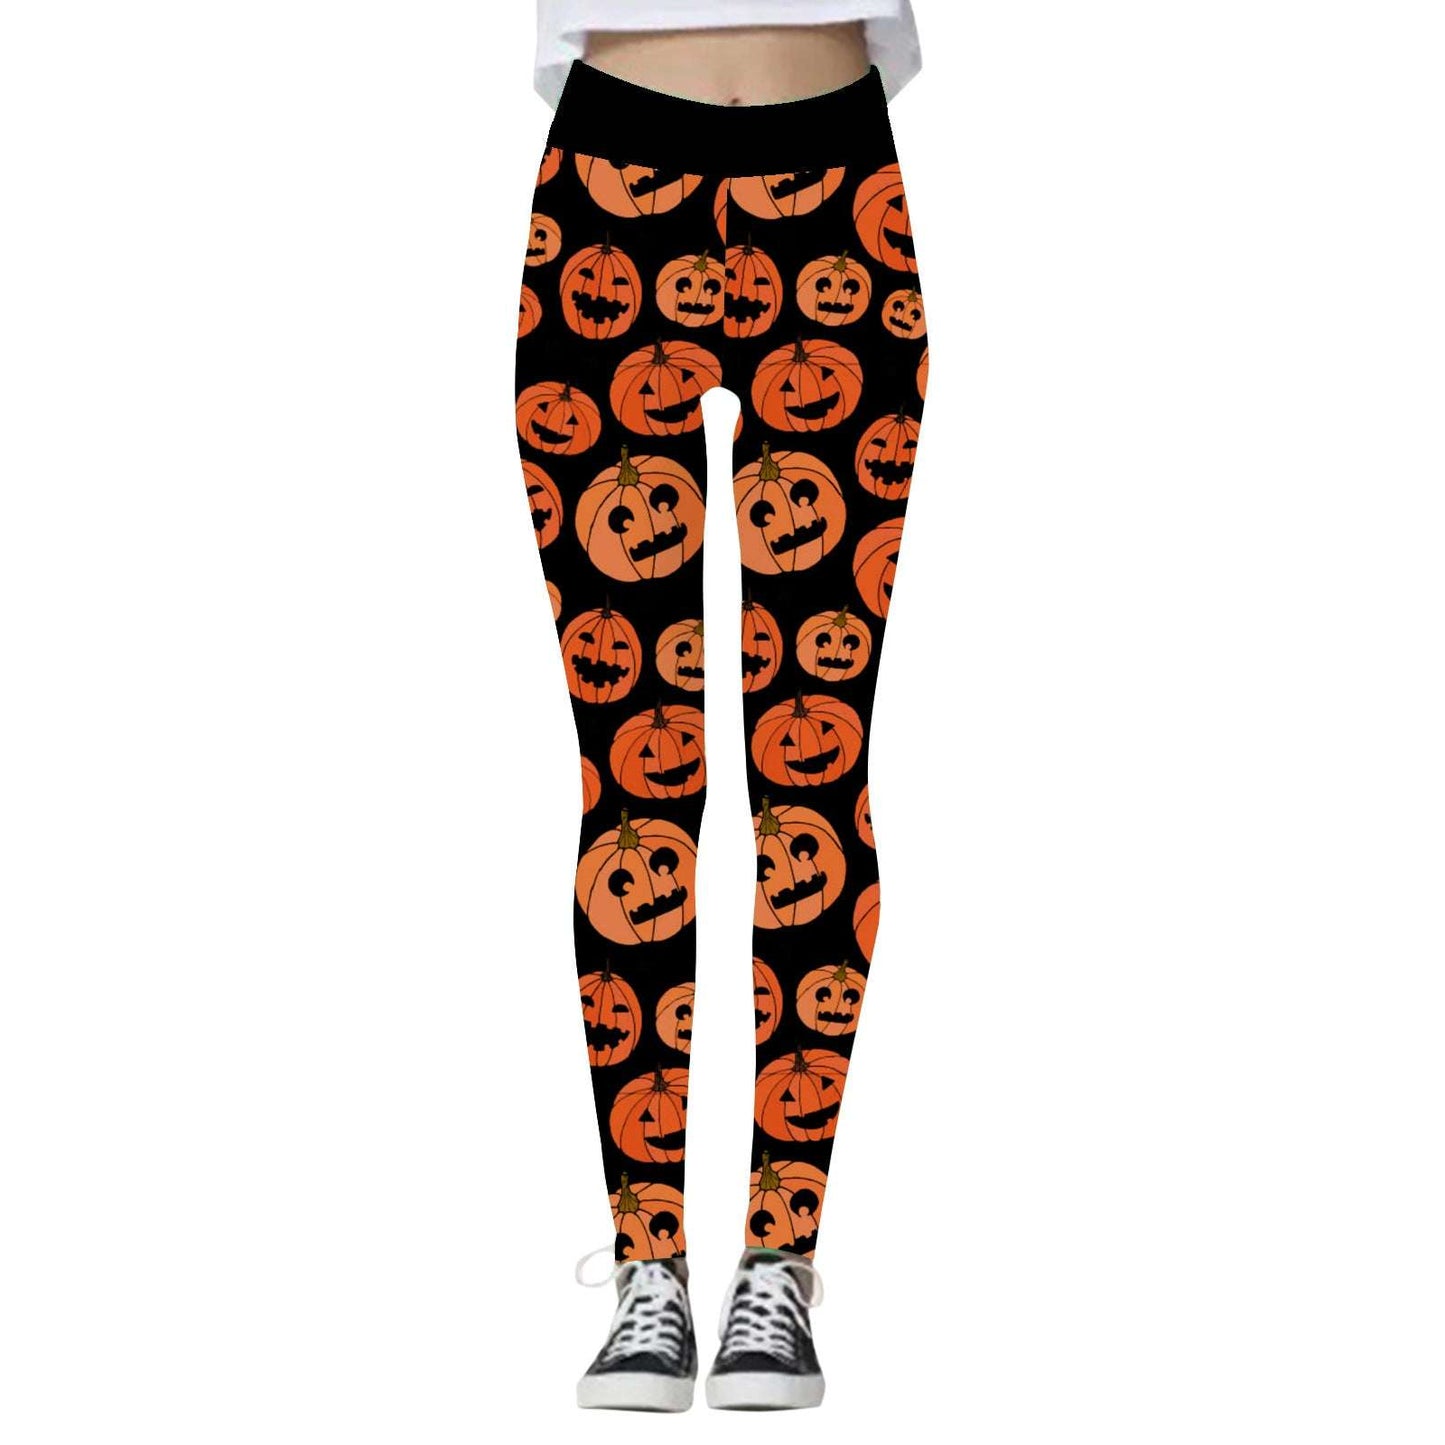 Halloween Leggings, High Waist Leggings, Sports Leggings - available at Sparq Mart